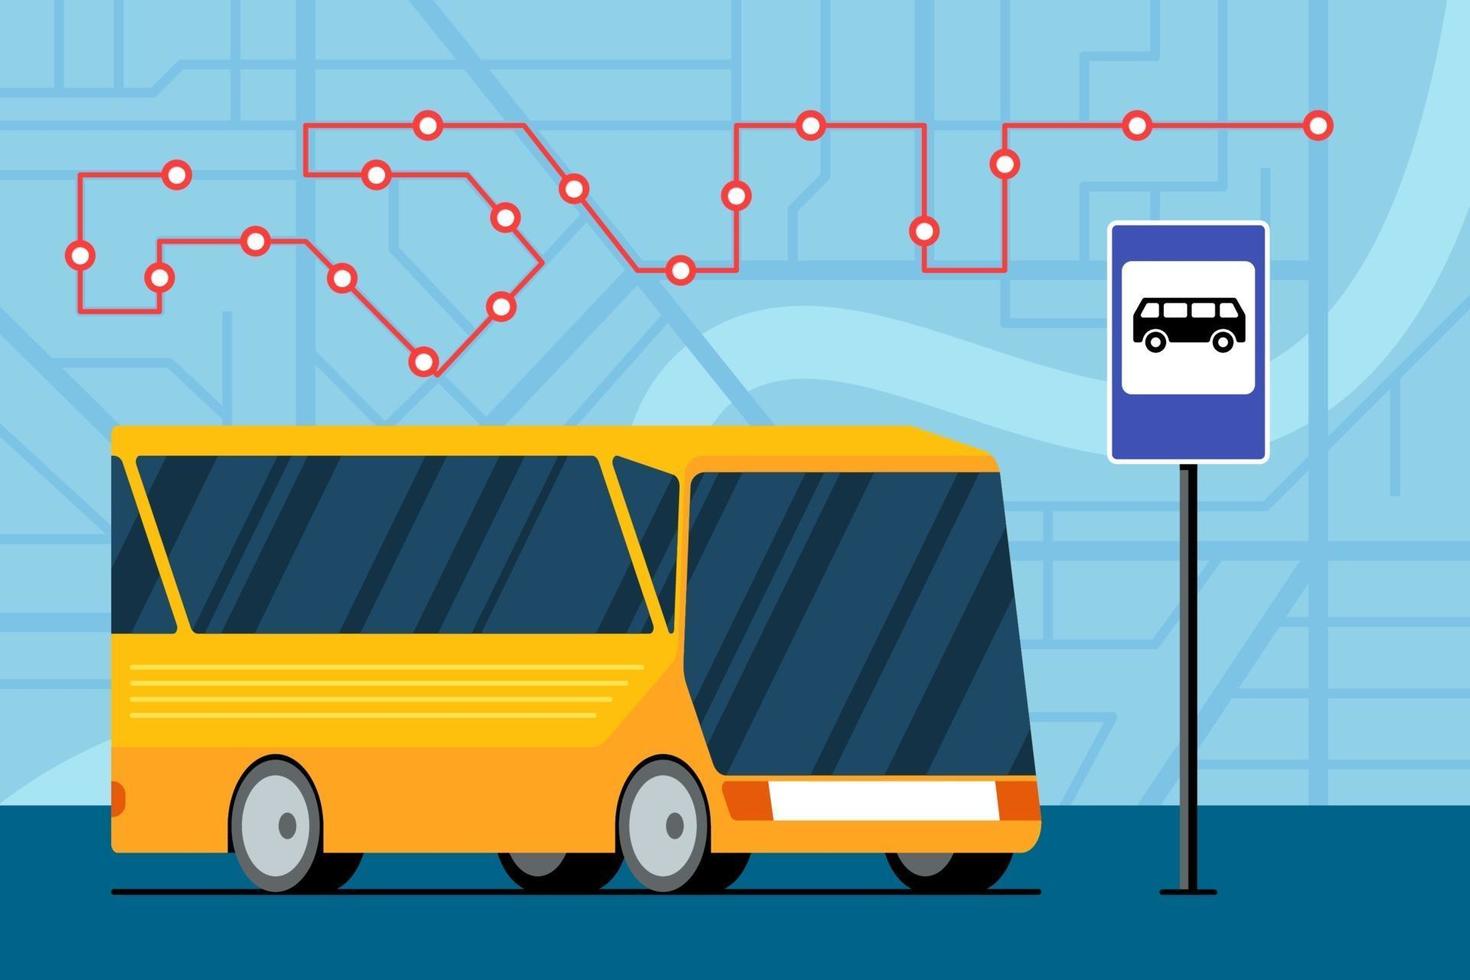 gelber futuristischer Stadttransportbus auf der Straße nahe Bushaltestelle Zeichen auf Karte mit Verkehrsnavigationsroute Standortmarkierungspositionsschema. vektor